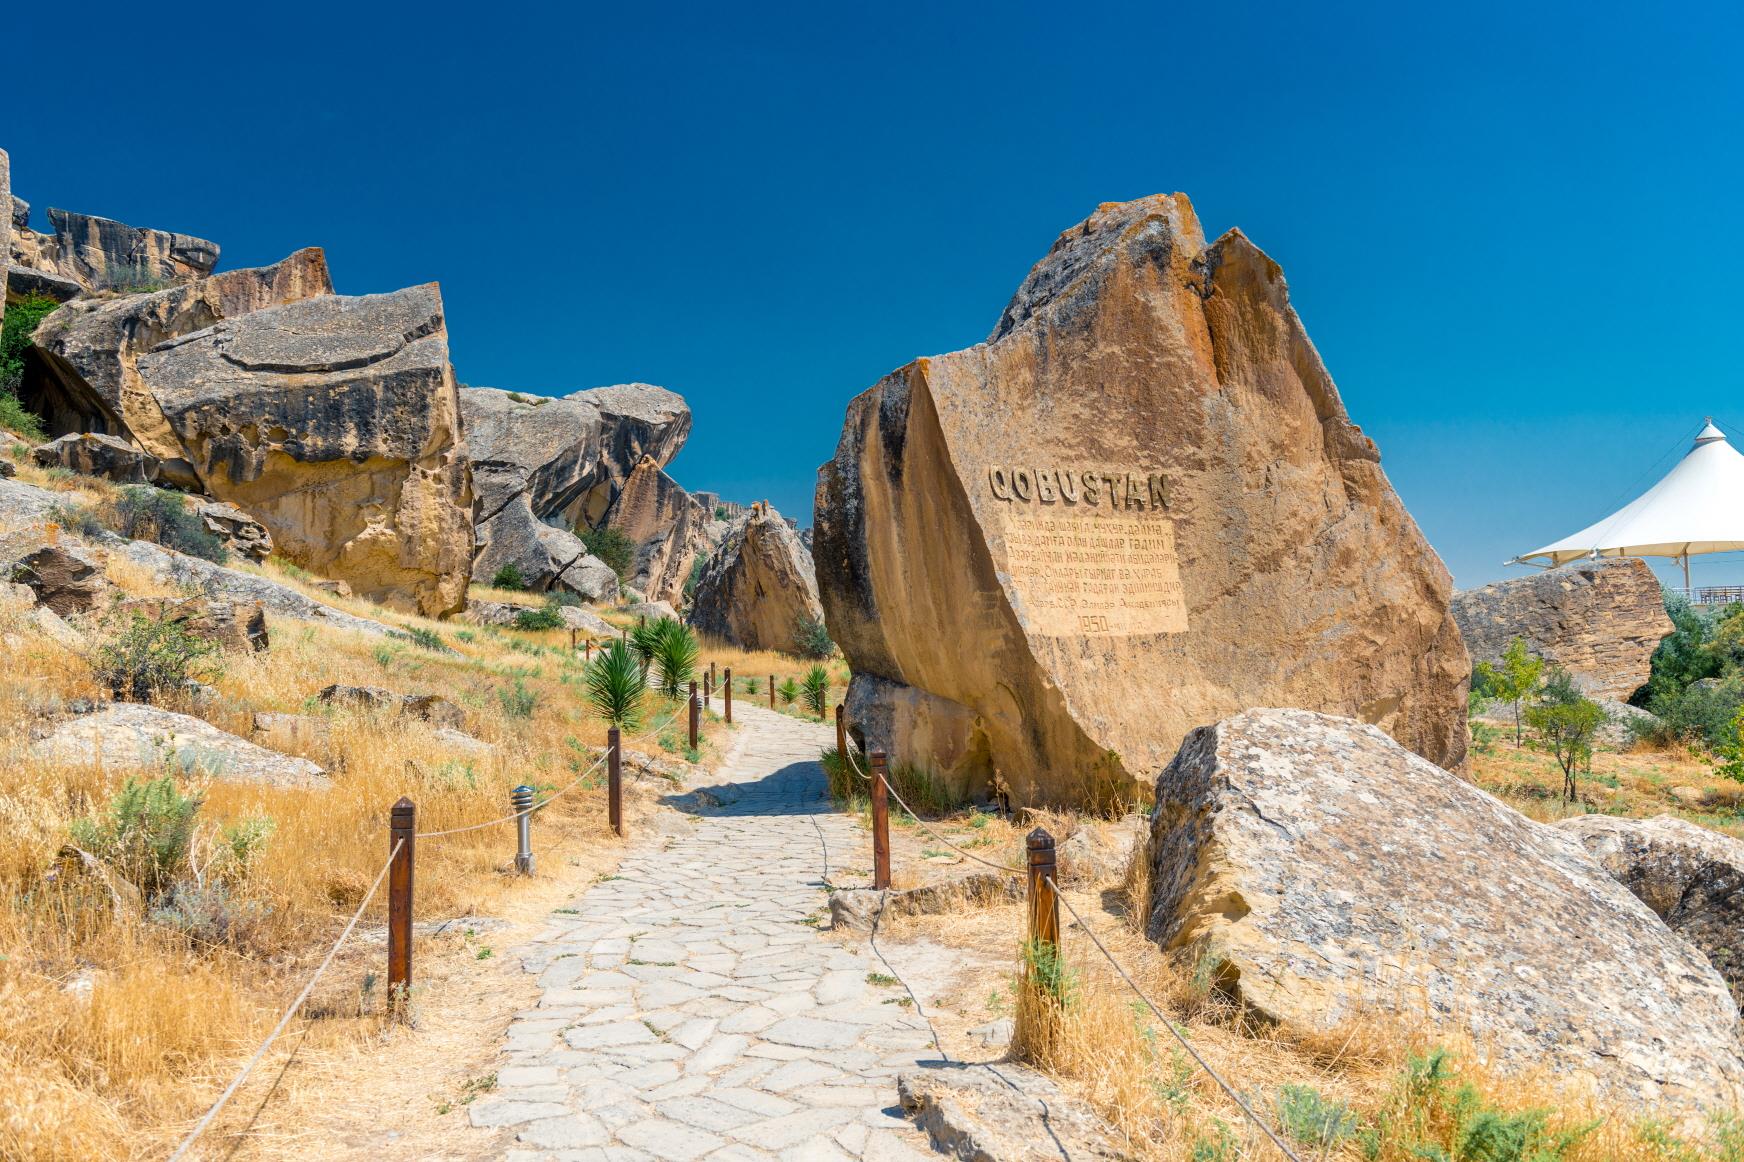 고부스탄 암각화  Qobustan Rock Art Cultural Landscape